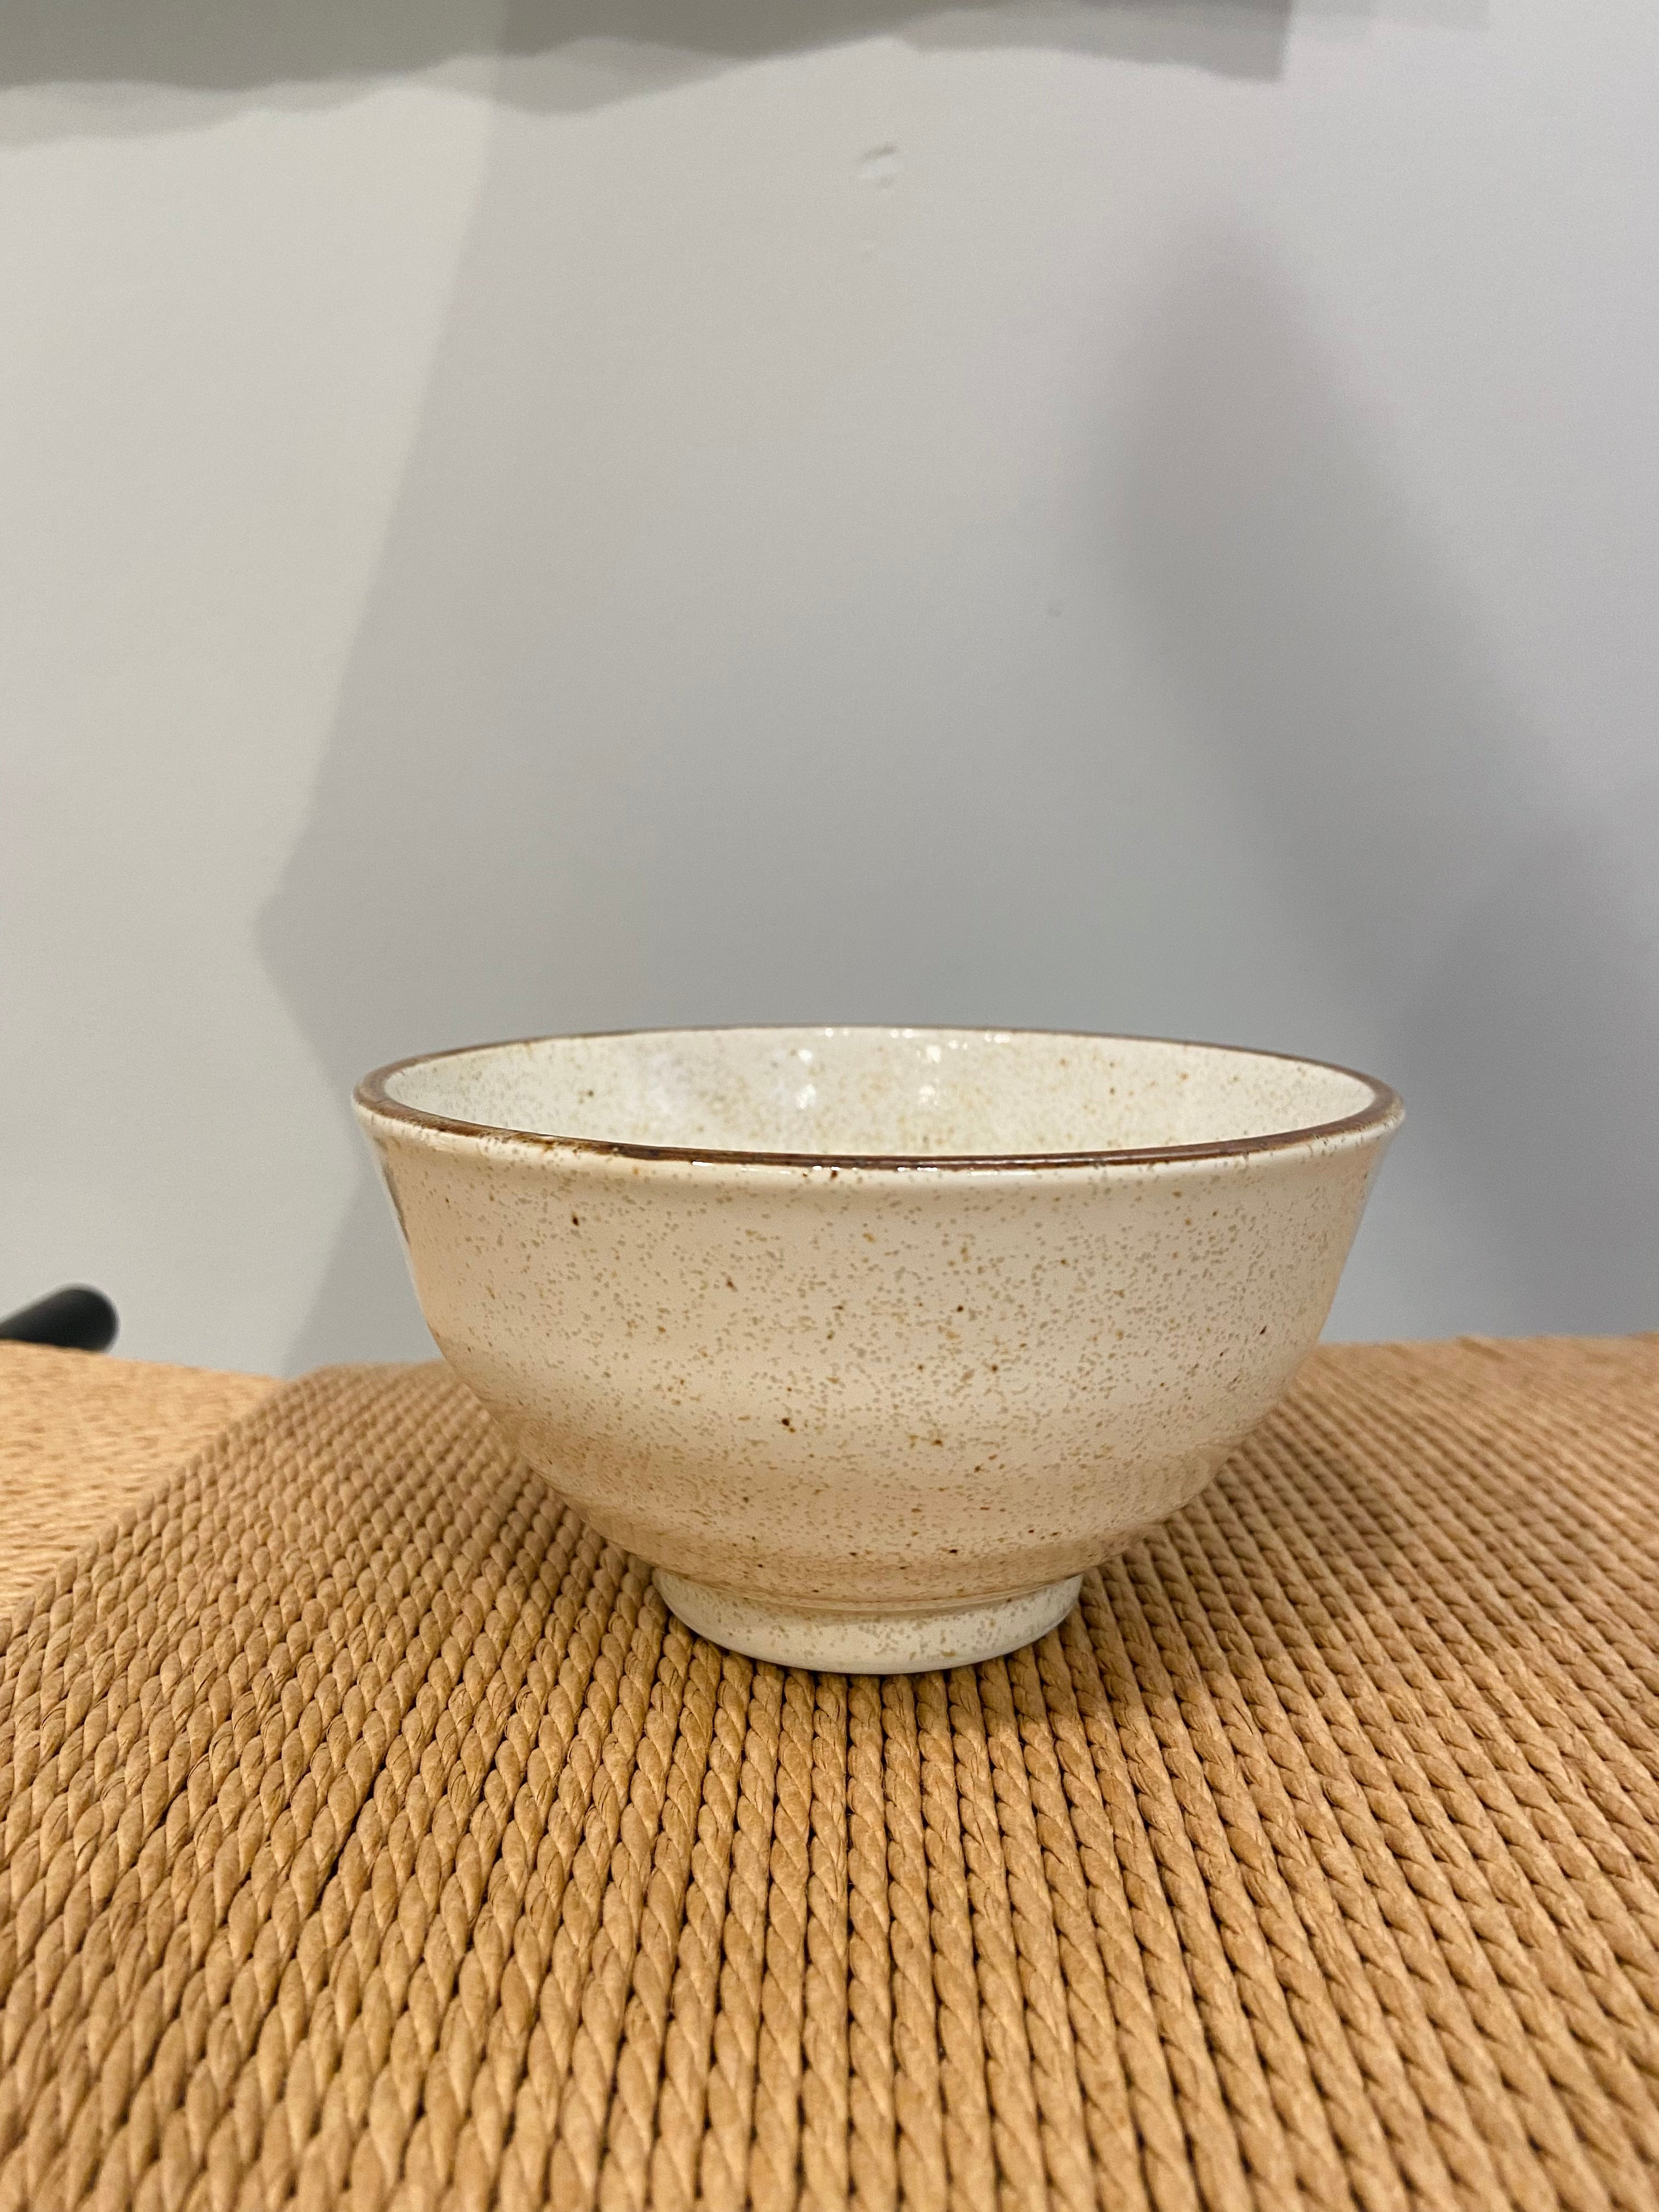 Cream colored ceramic bowl